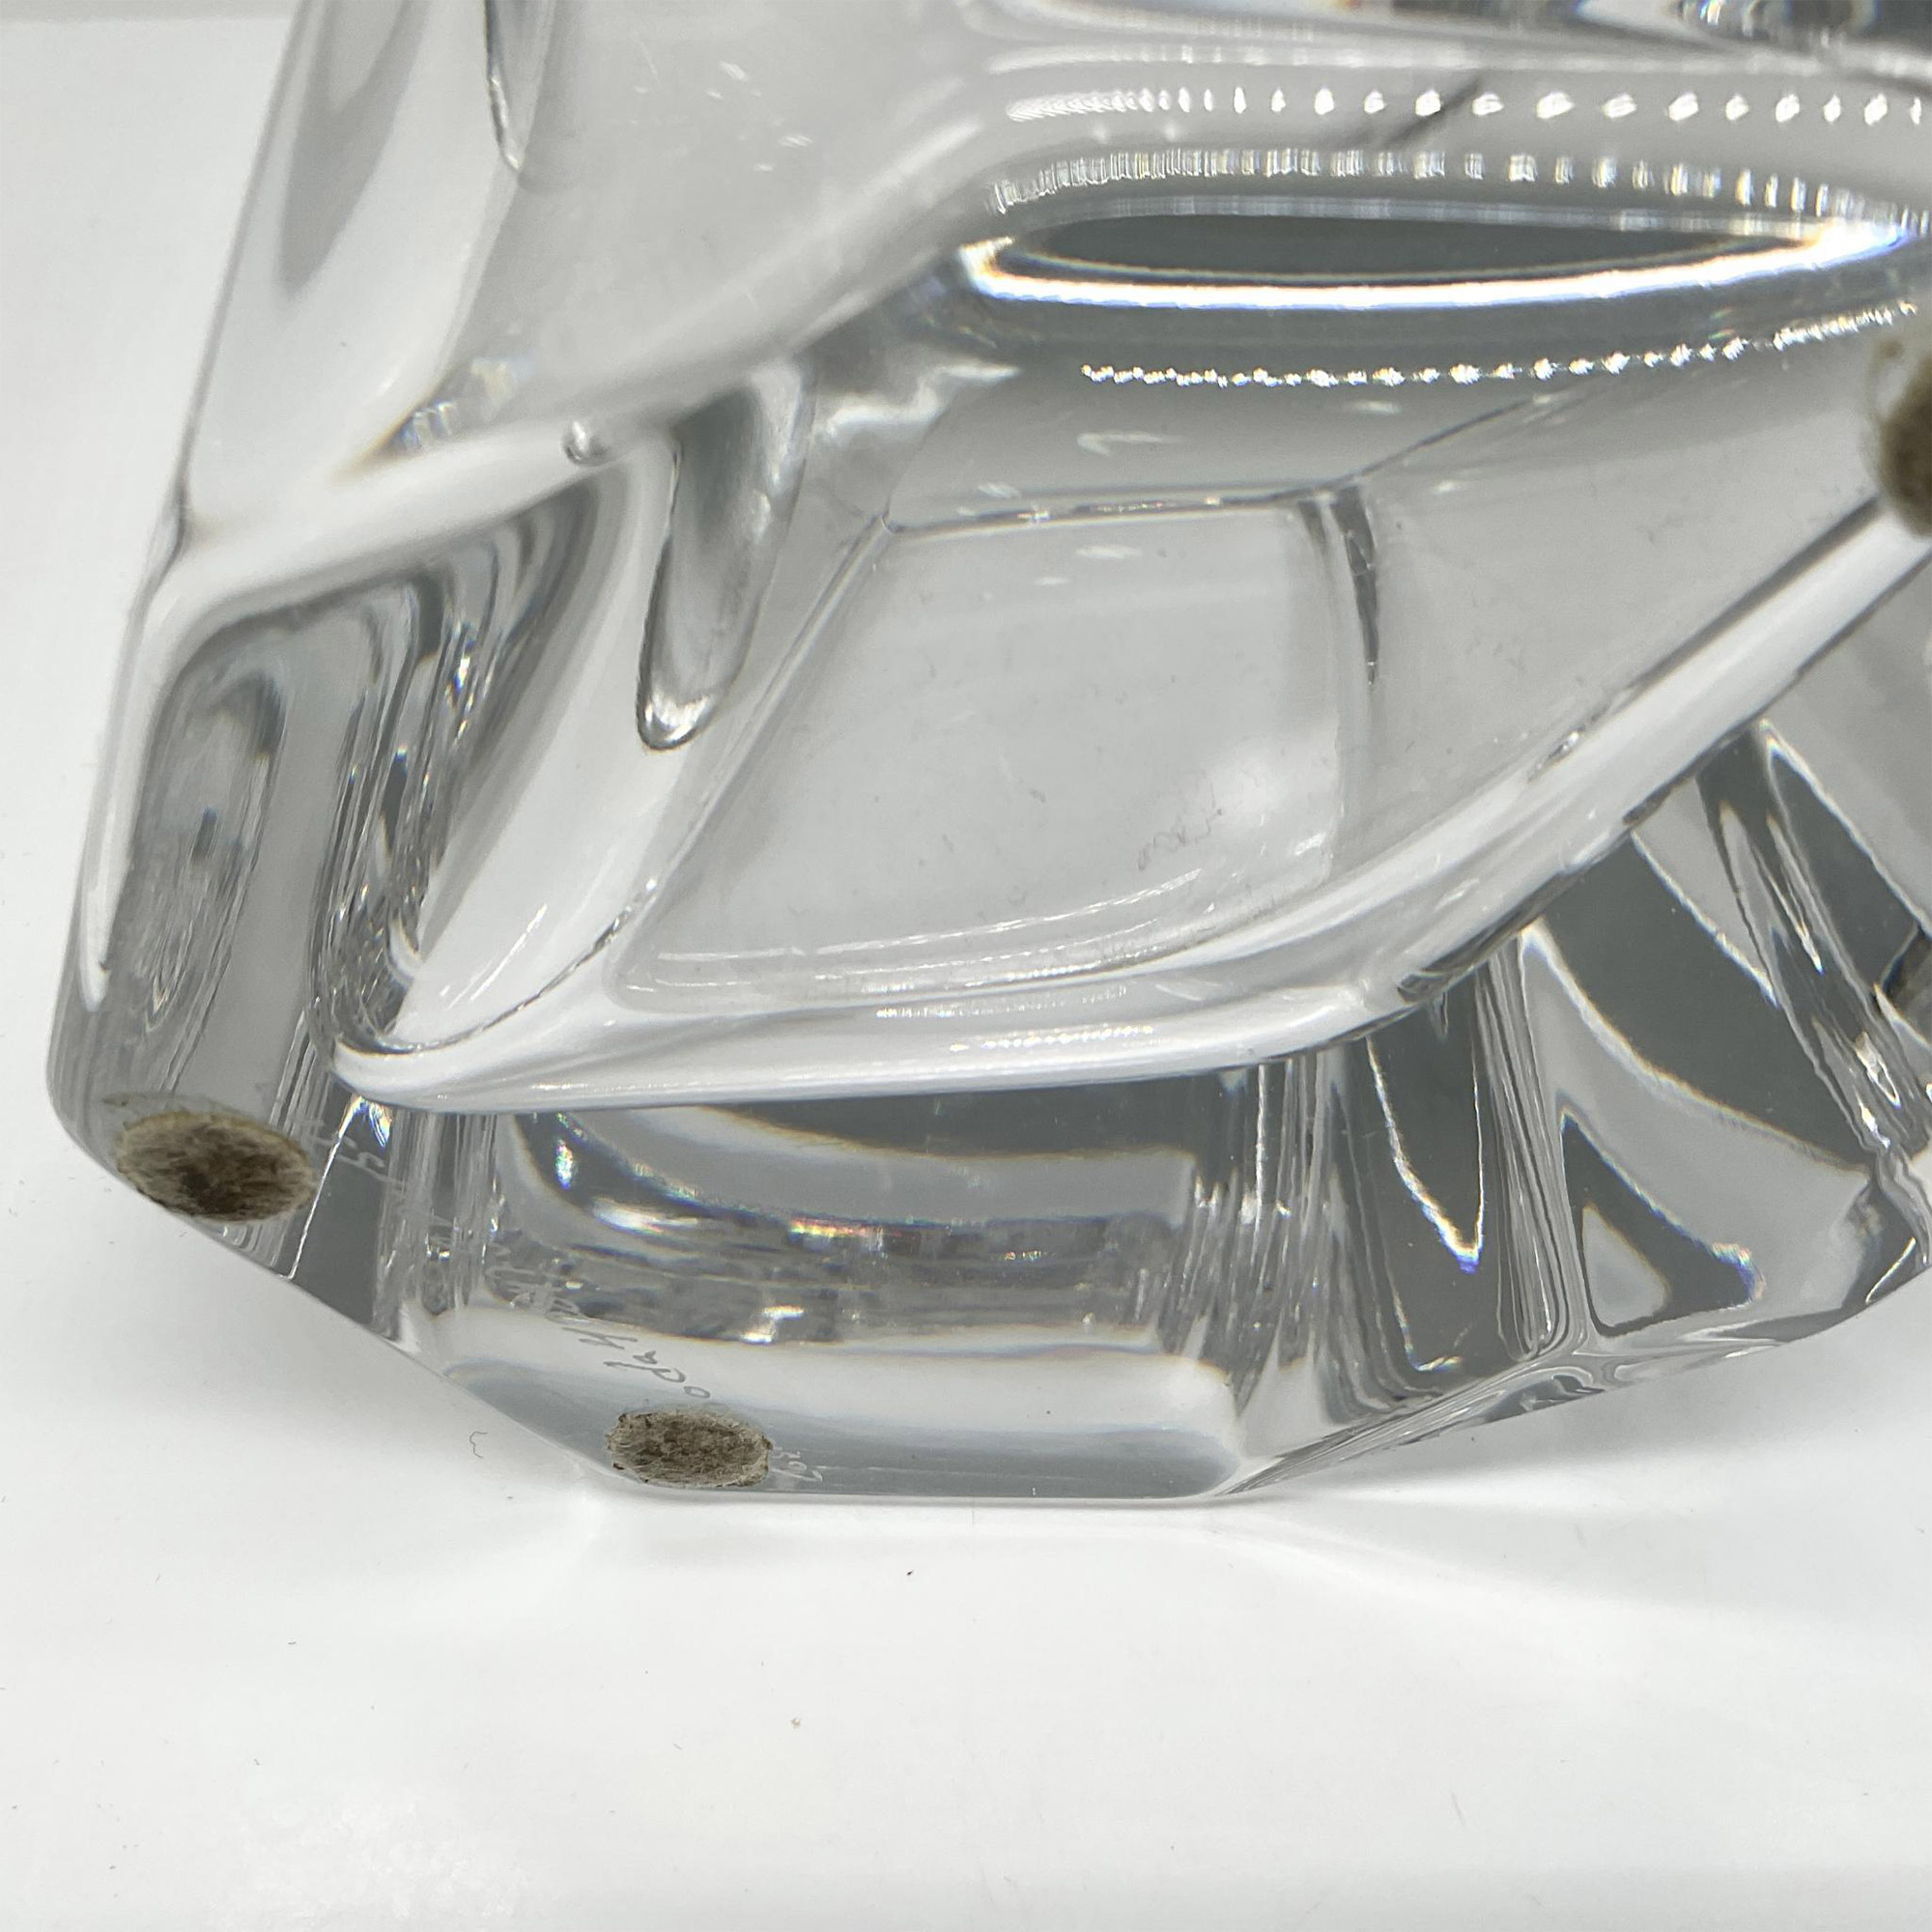 Kosta Boda Four-Sided Crystal Vase, Signed - Image 4 of 4